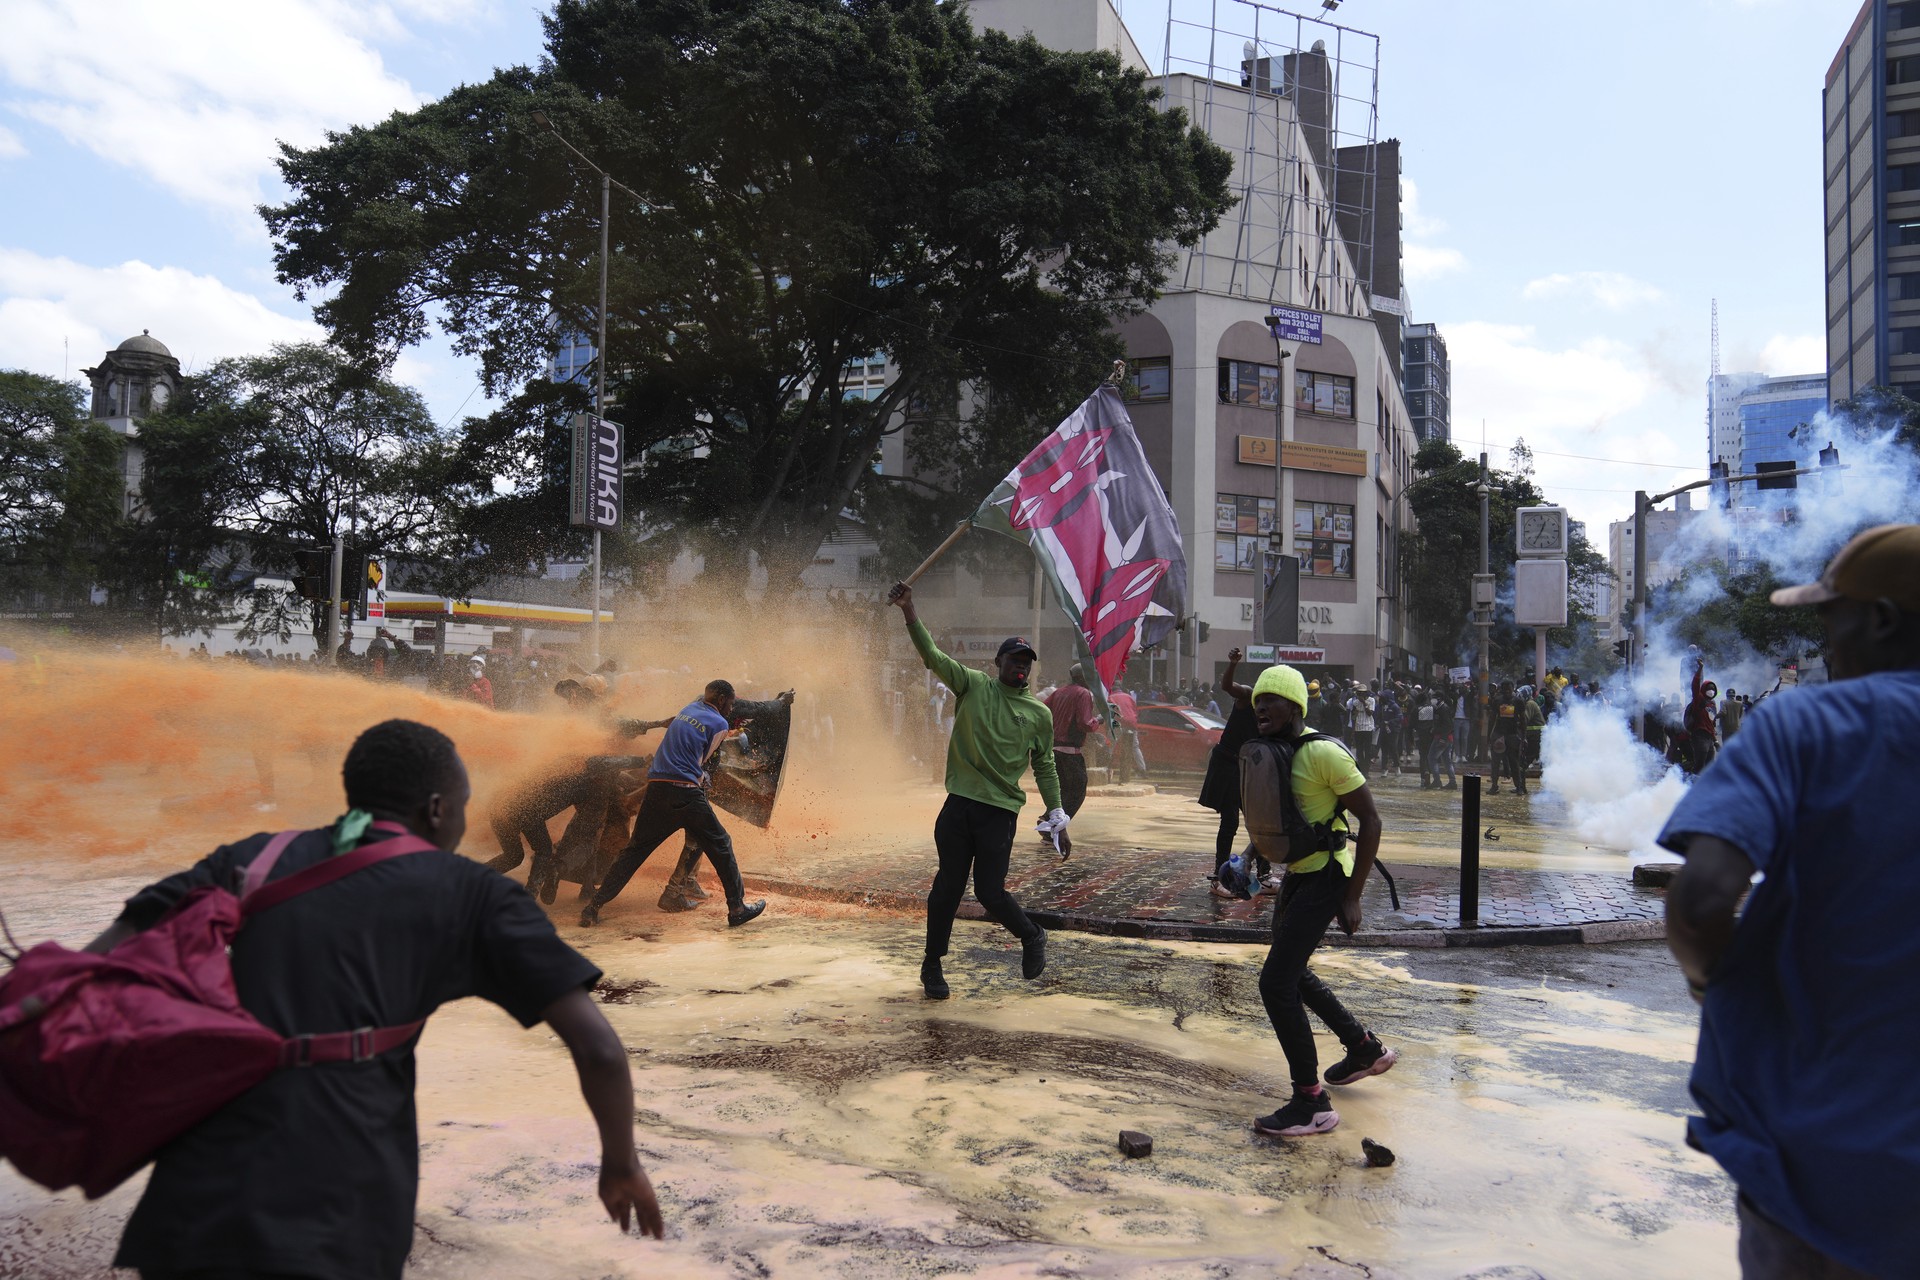 Сестра Обамы и её дочь пострадали от слезоточивого газа на протестах в Кении